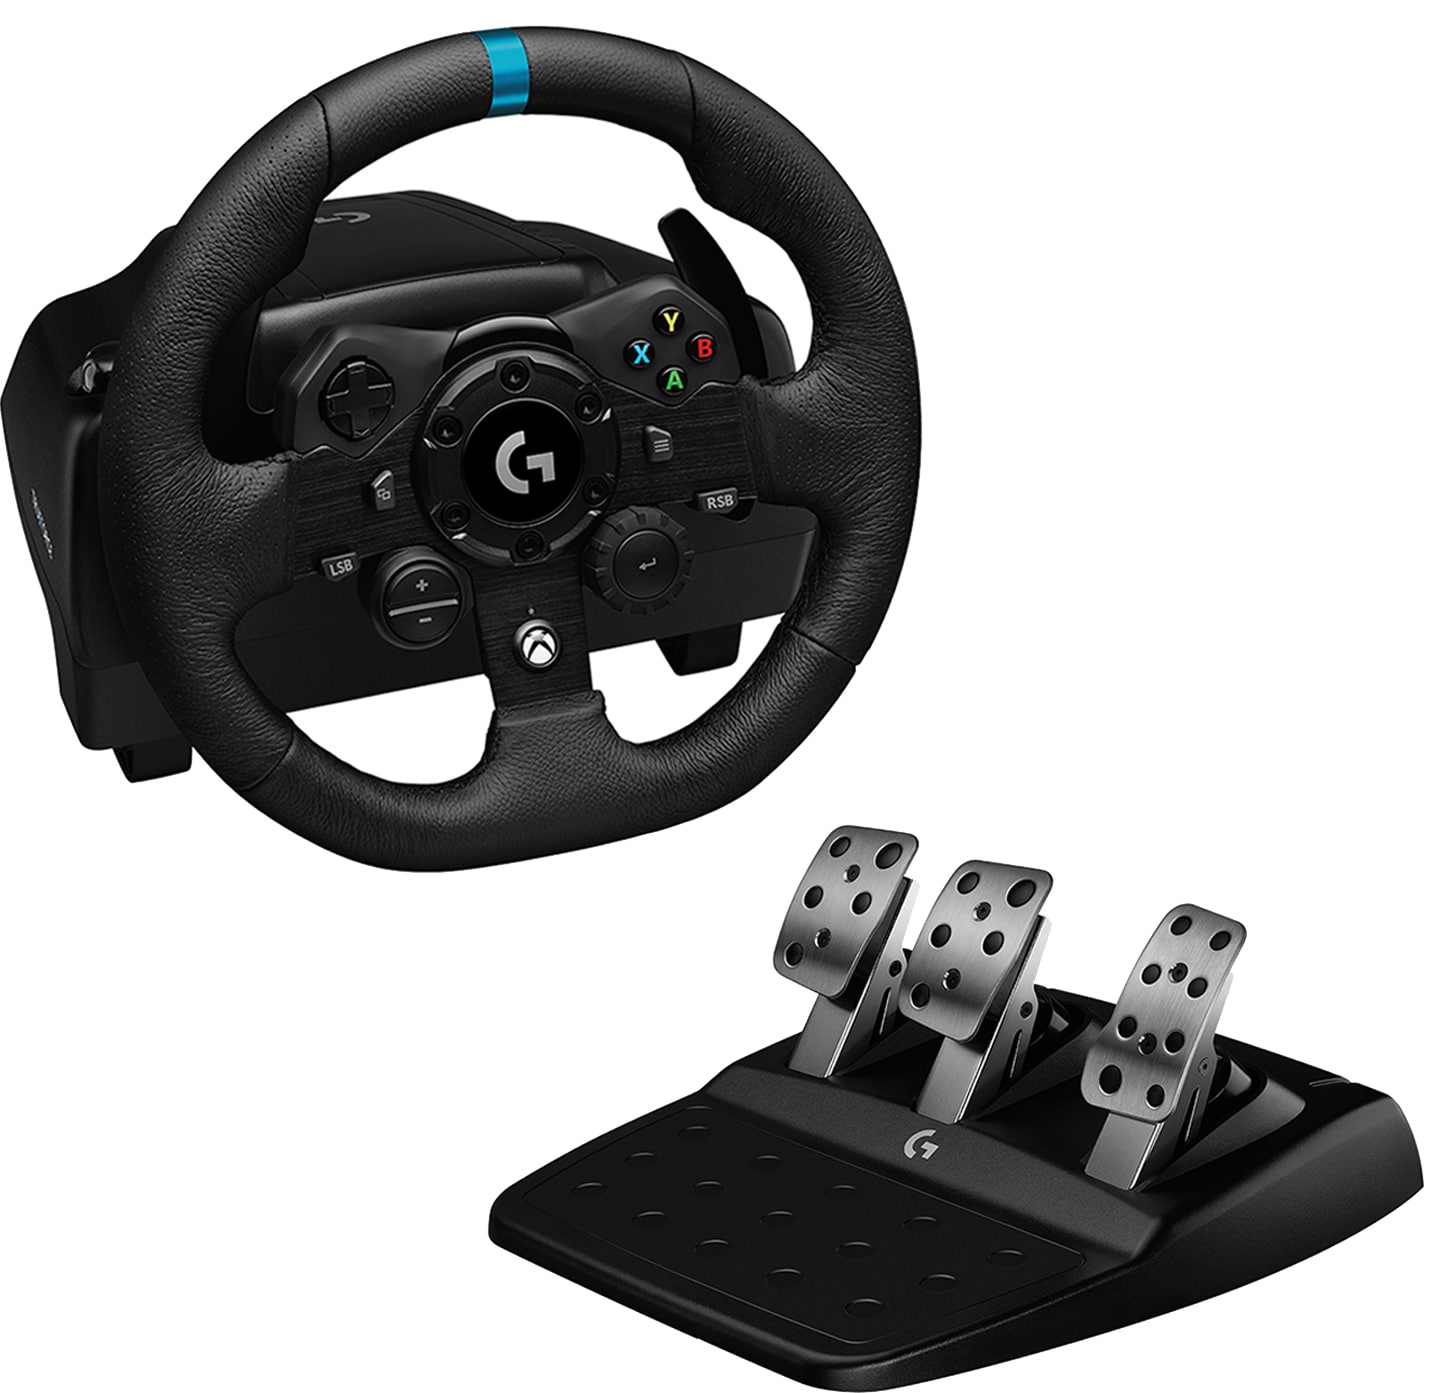 Logitech G923 rattiohjain ja polkimet (PC/Xbox) - Gigantti verkkokauppa